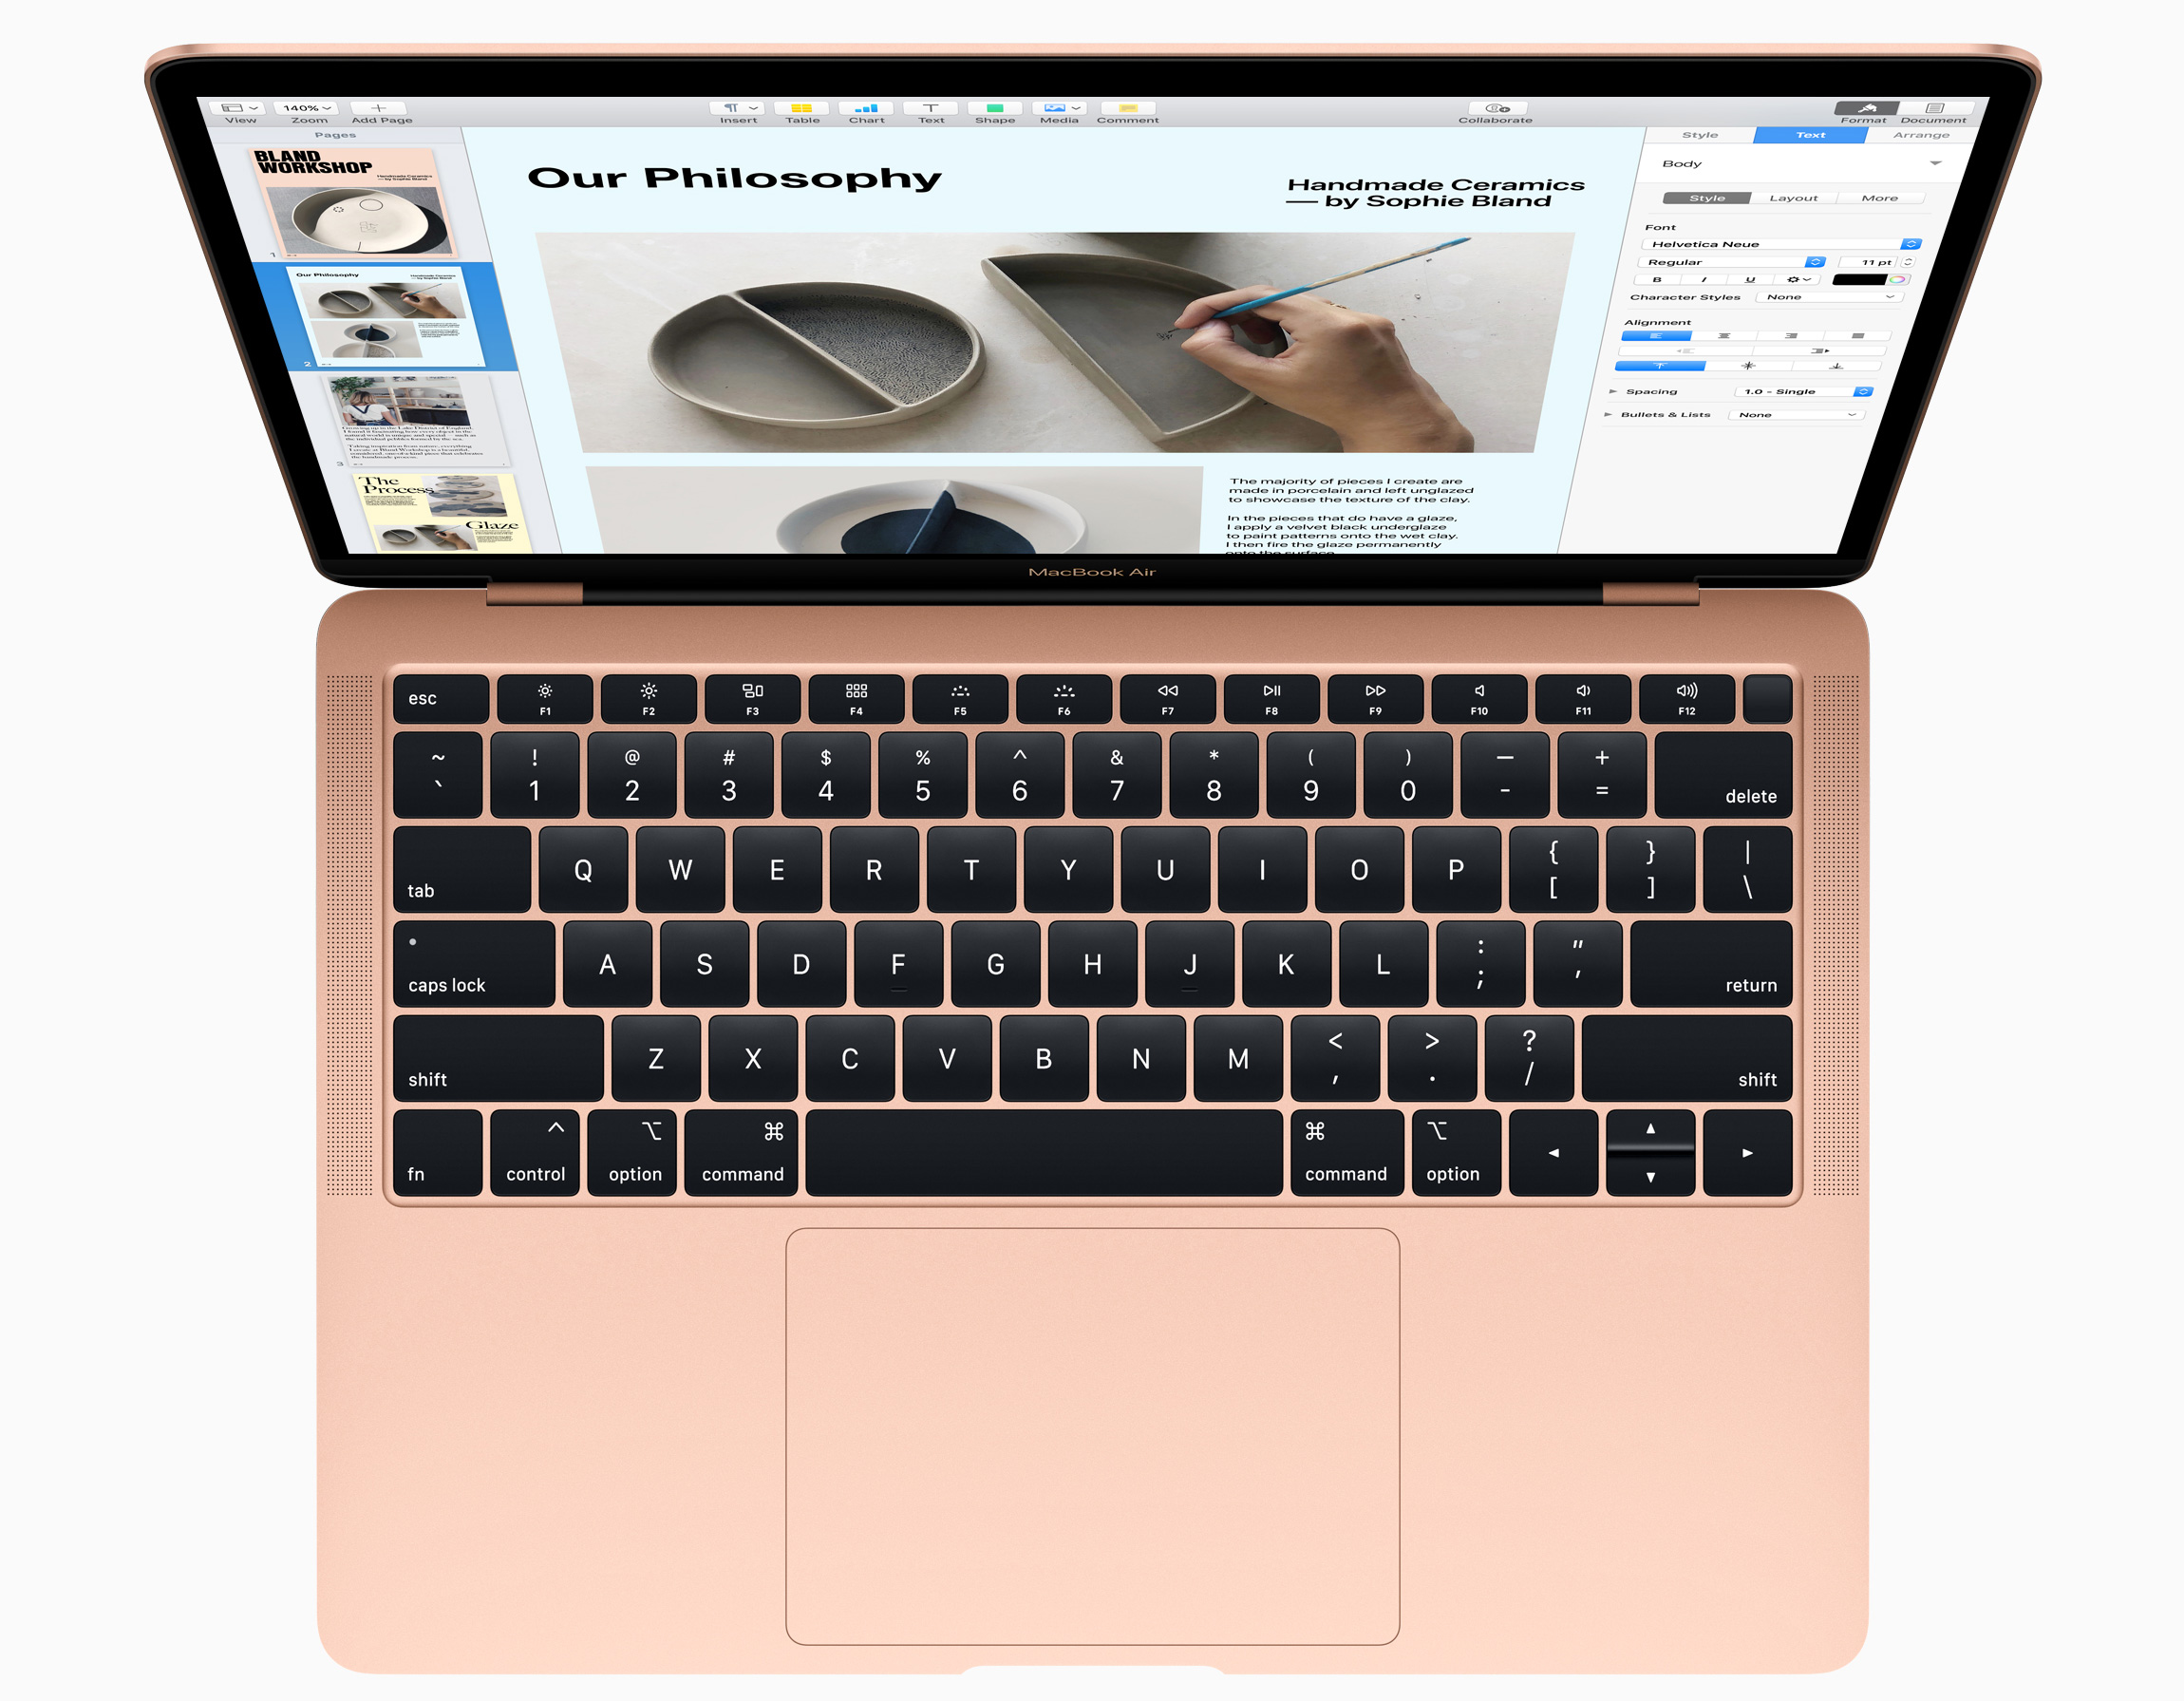 Apple Announces 2018 MacBook Air: Entry-Level Laptop Gets